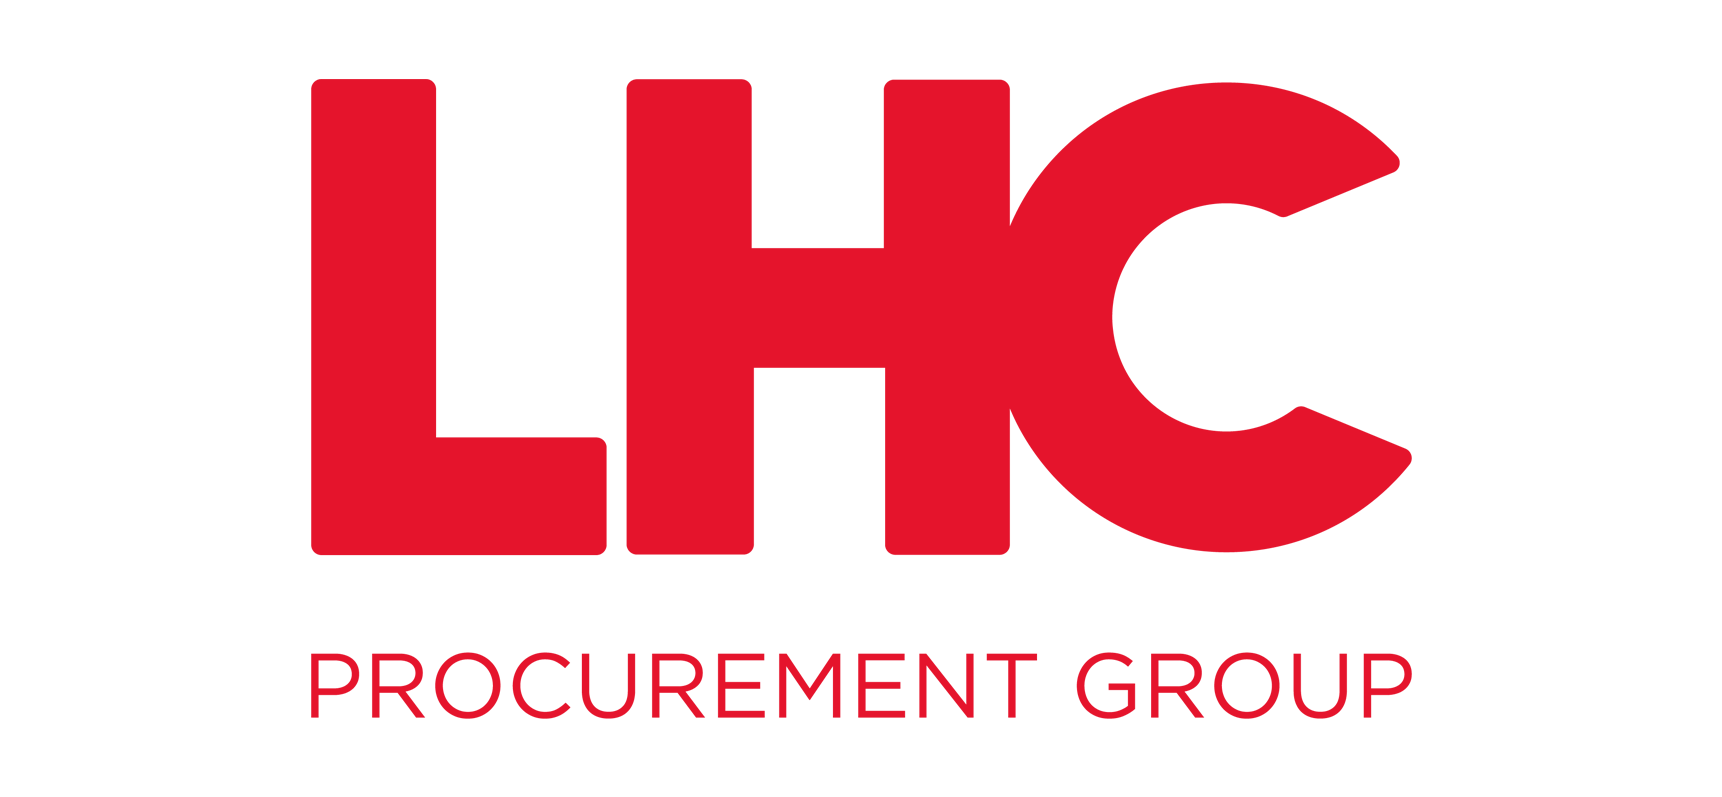 LHC logo